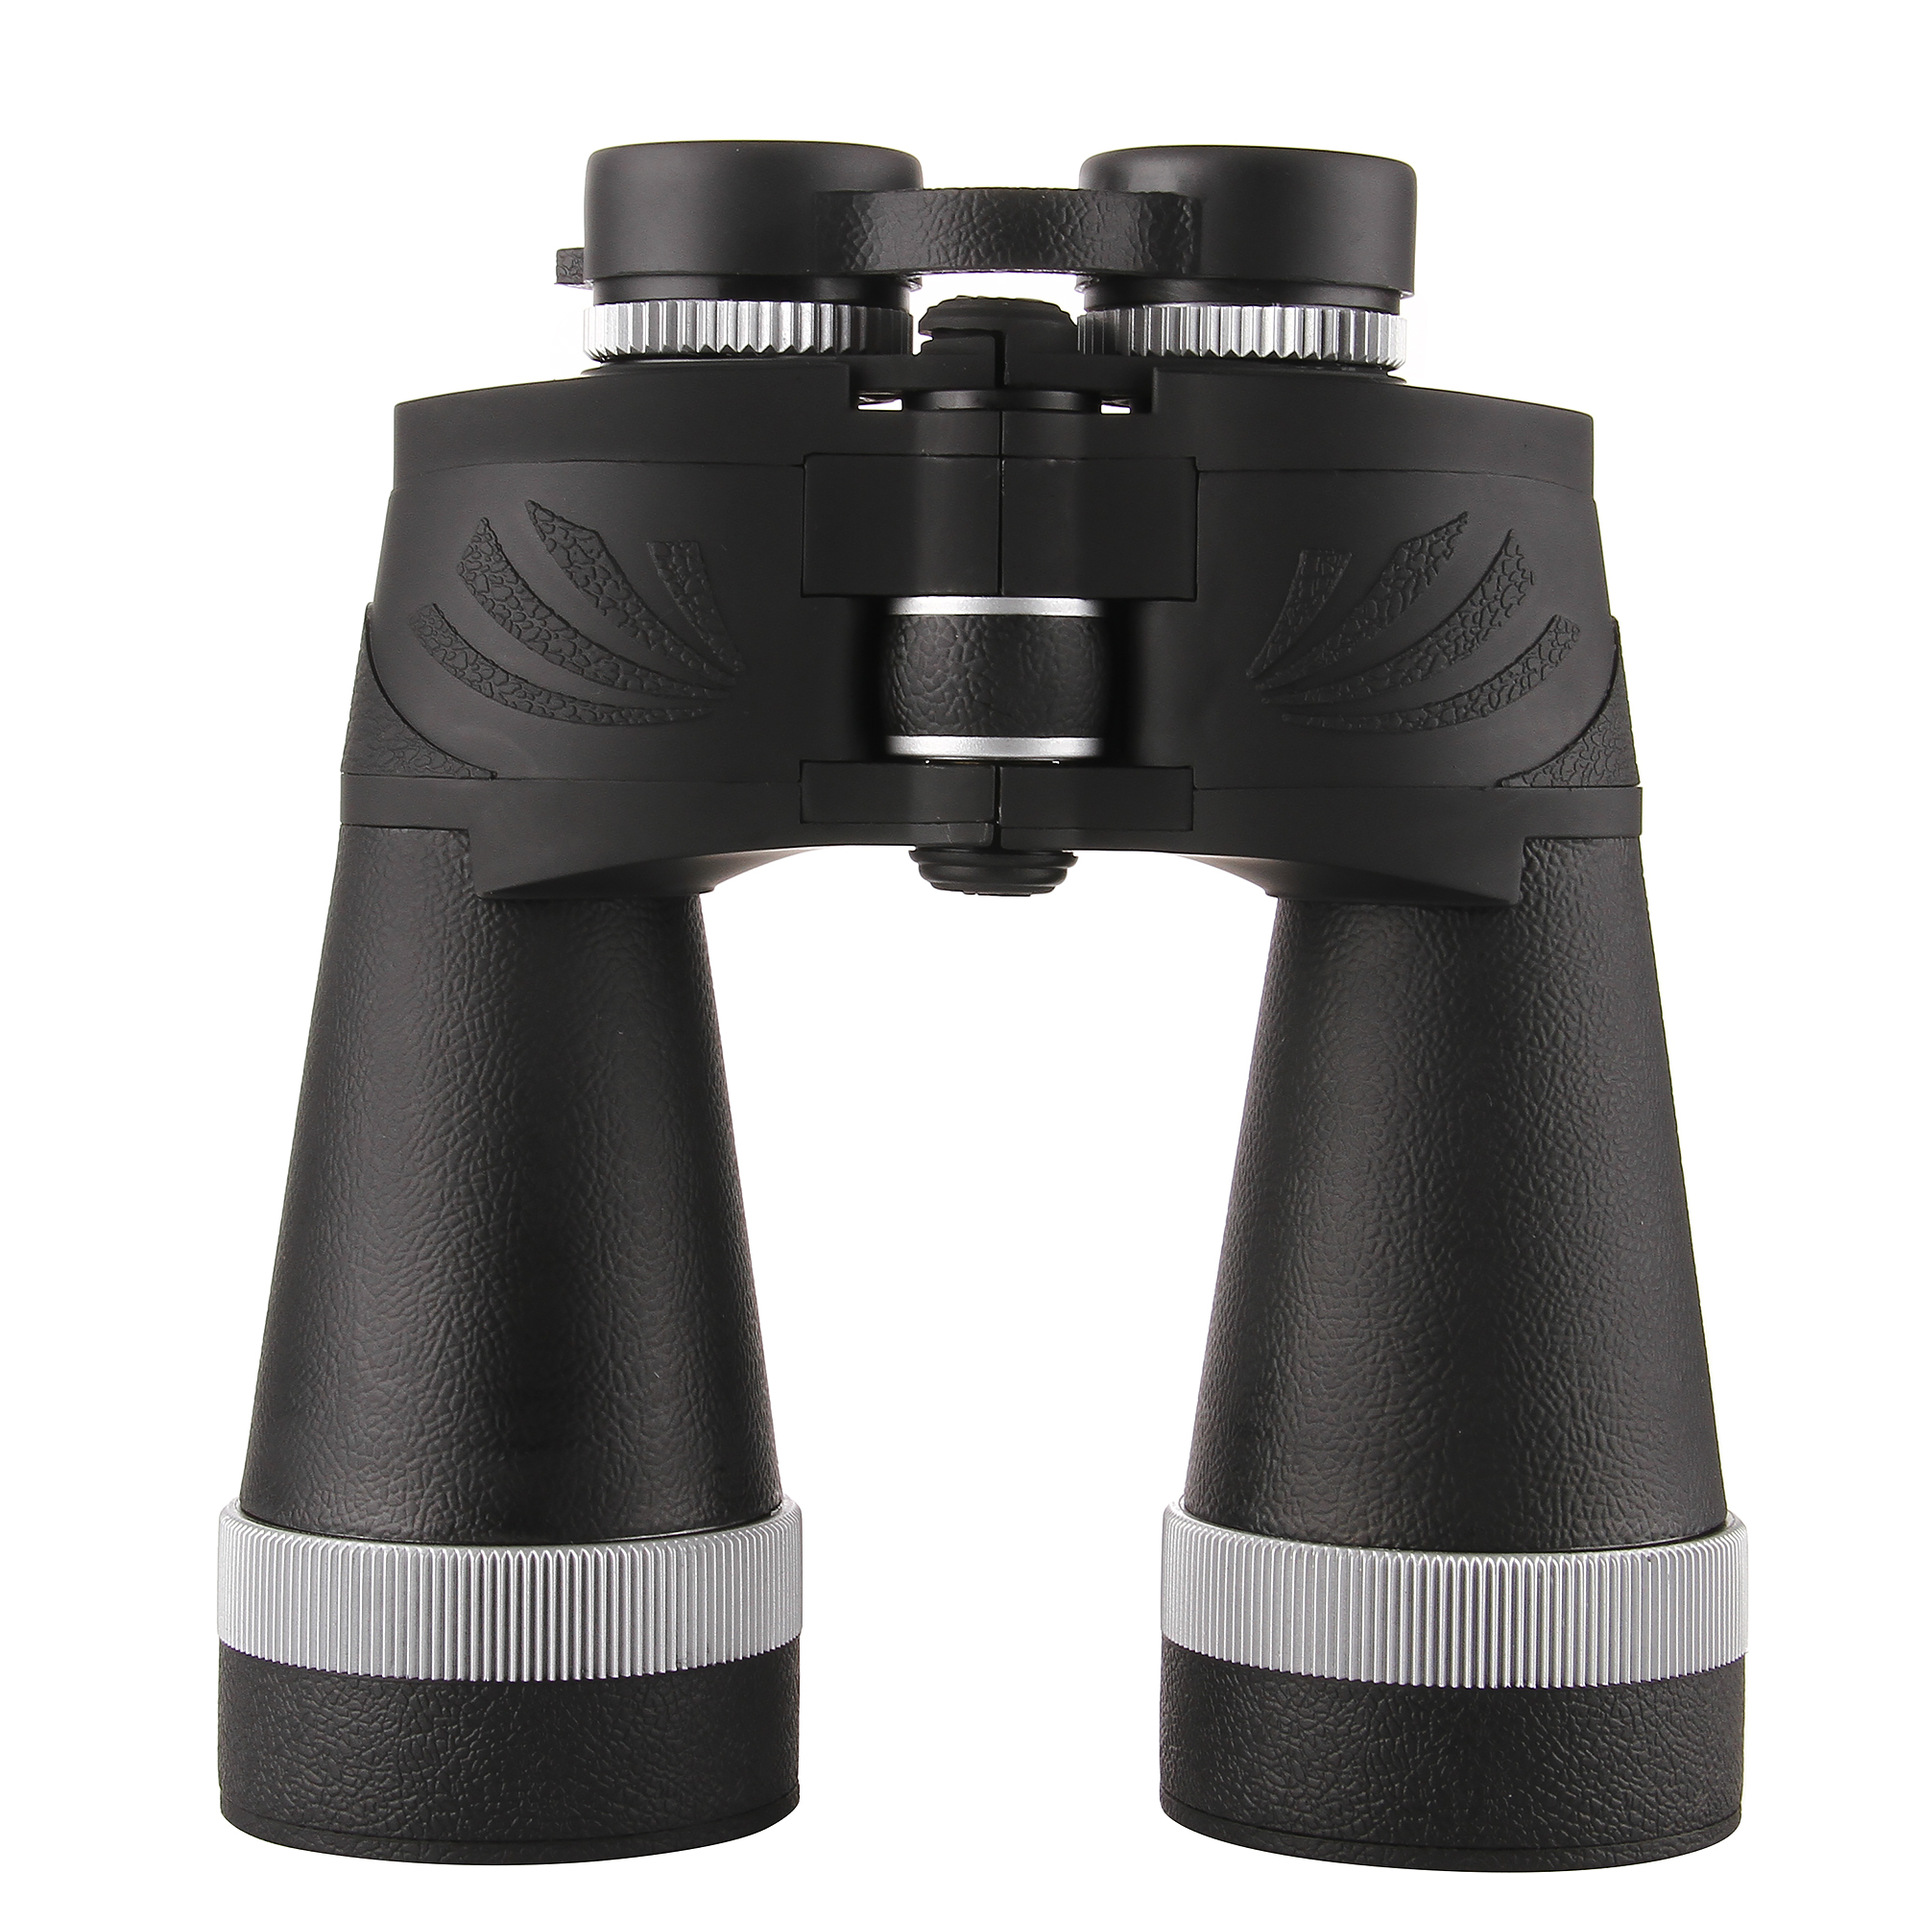 批发F36050入门天文望远镜-观景镜单筒望远镜 学生儿童礼品-阿里巴巴